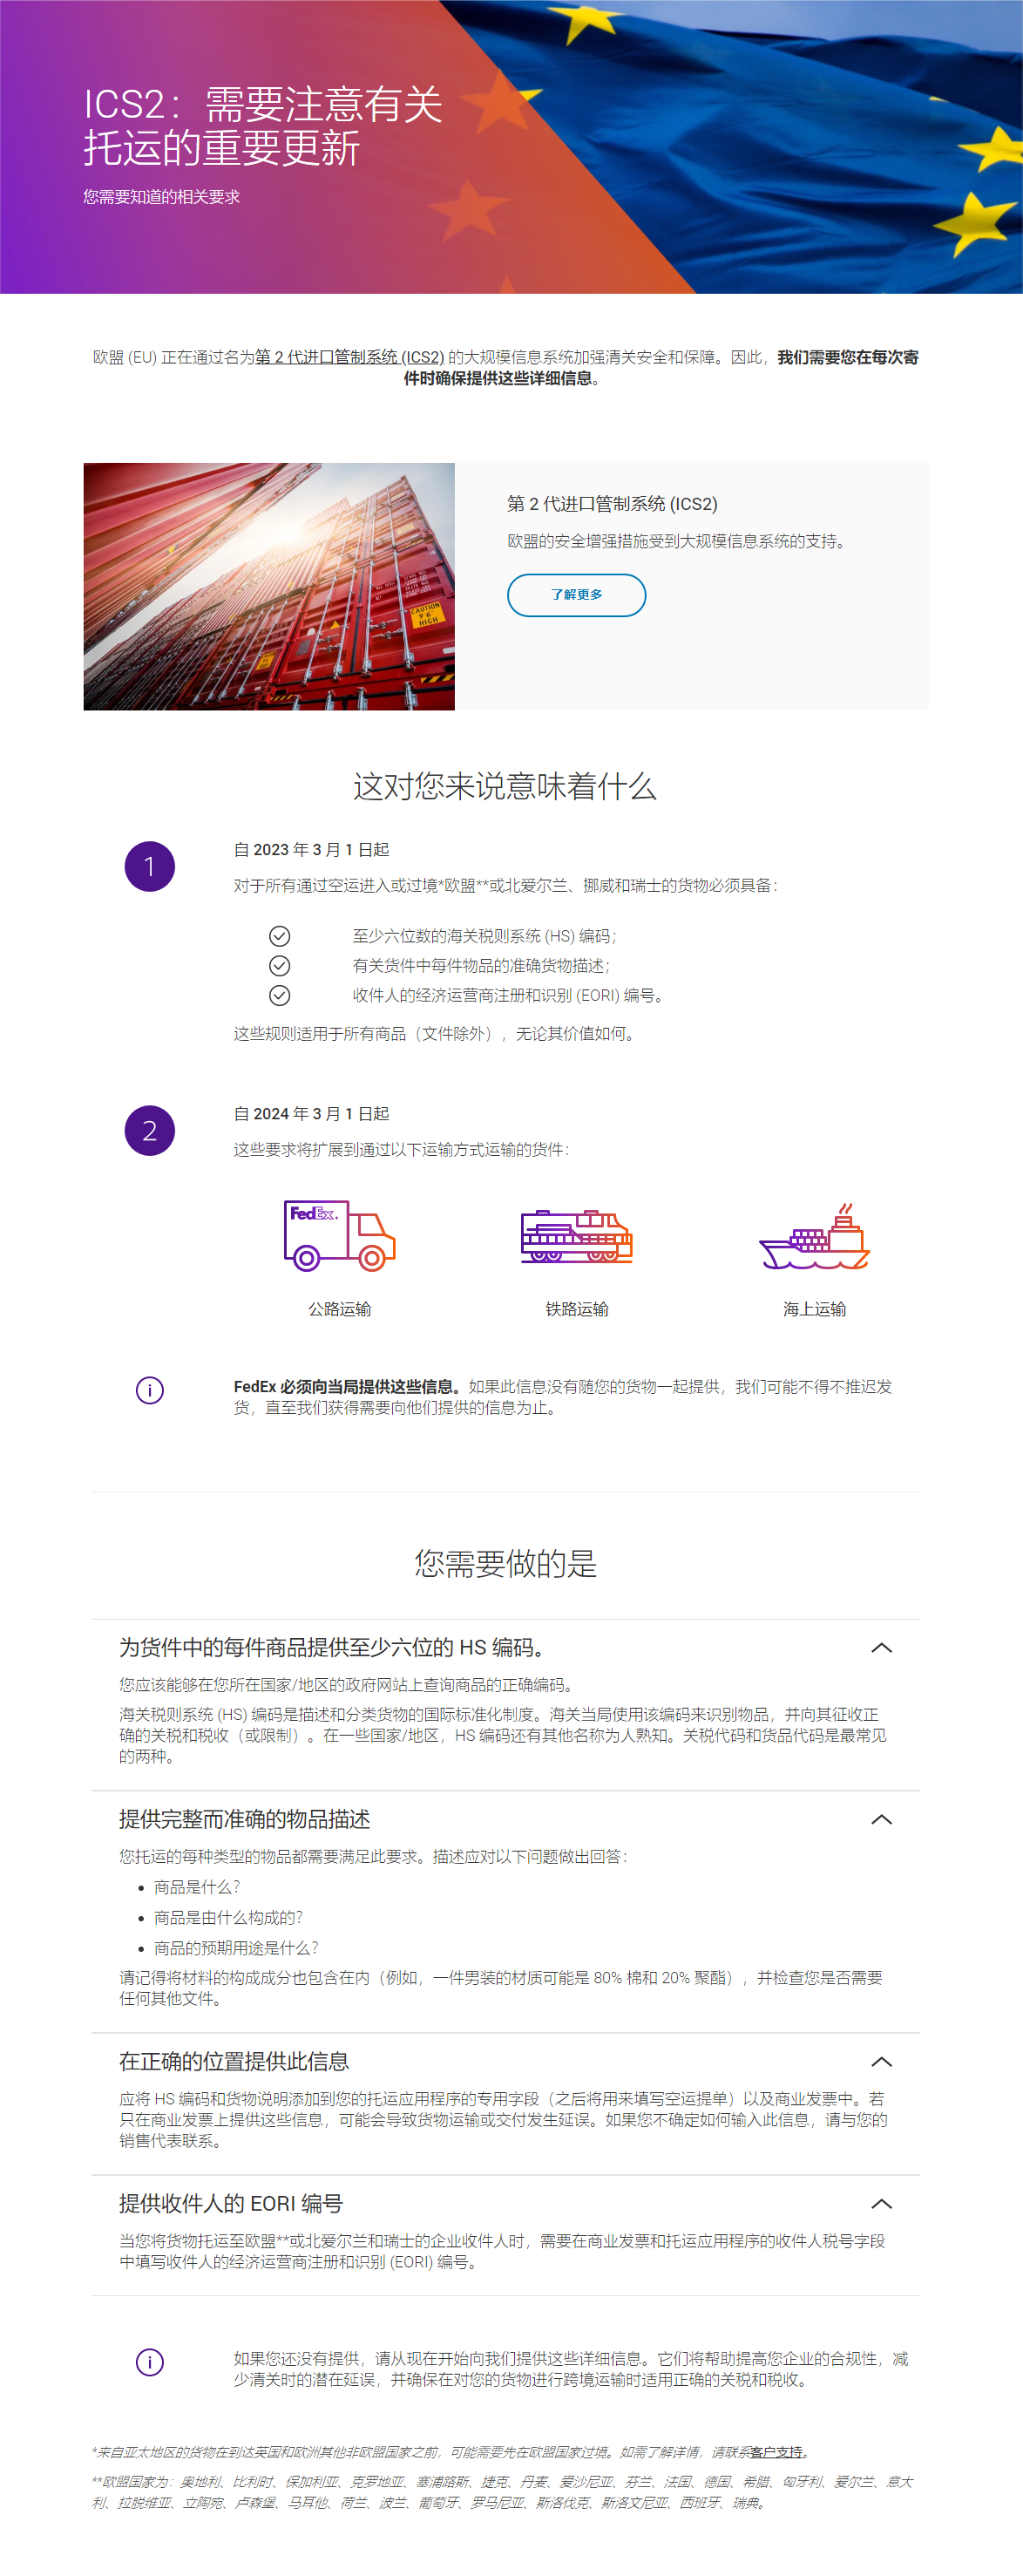 第 2 代进口管制系统 (ICS2) 第 2 版 _ FedEx 中国.png